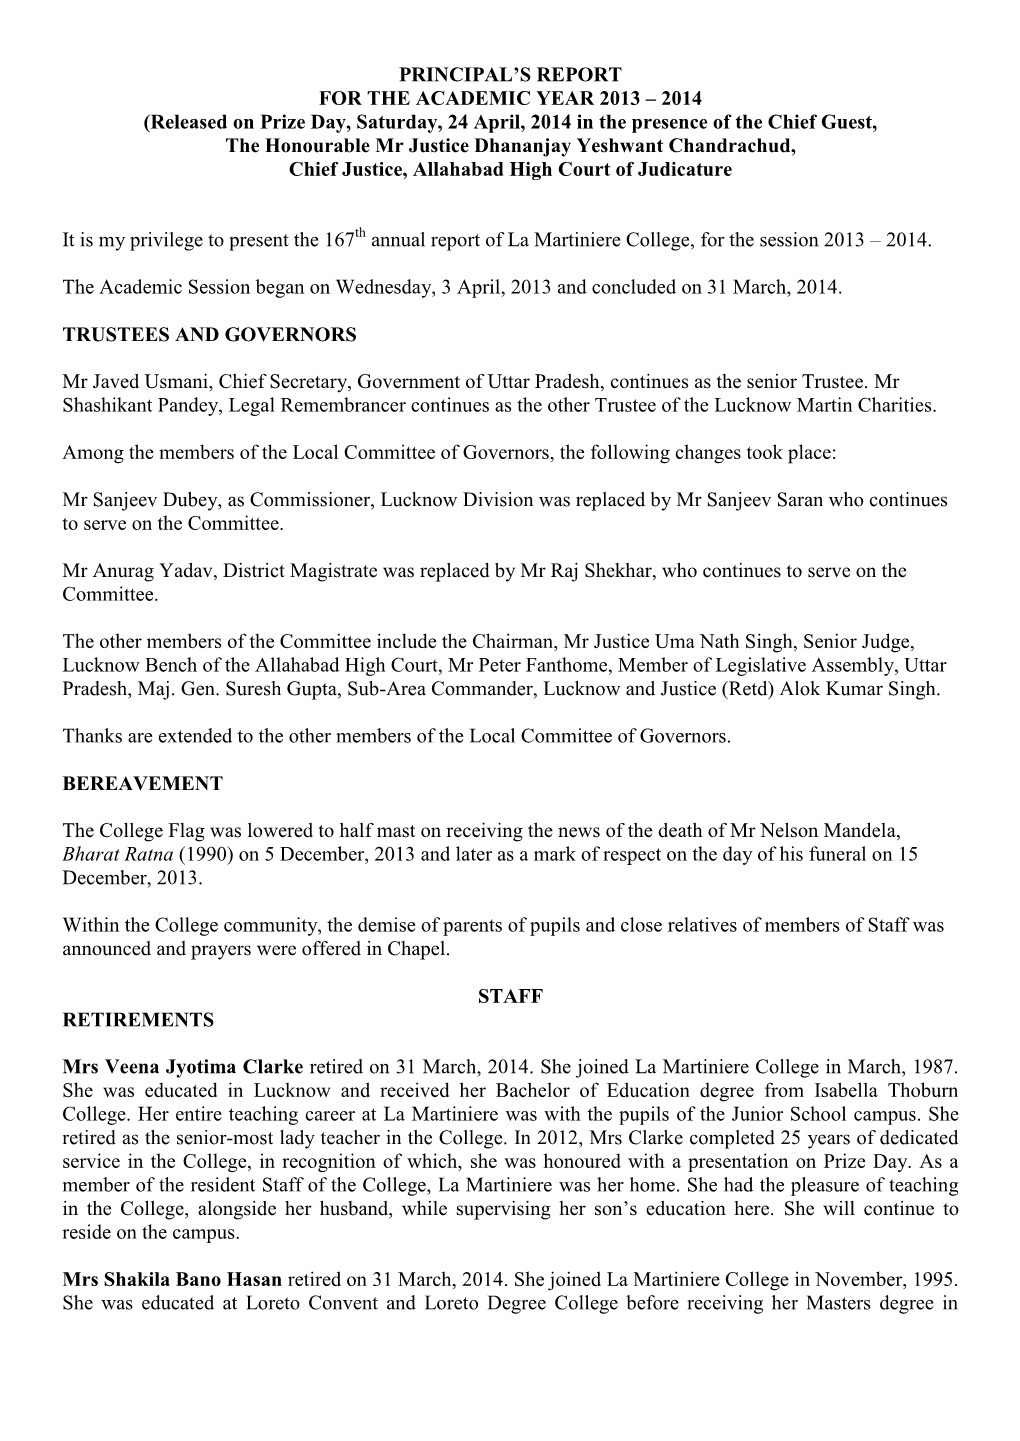 Principal Report 2013-2014